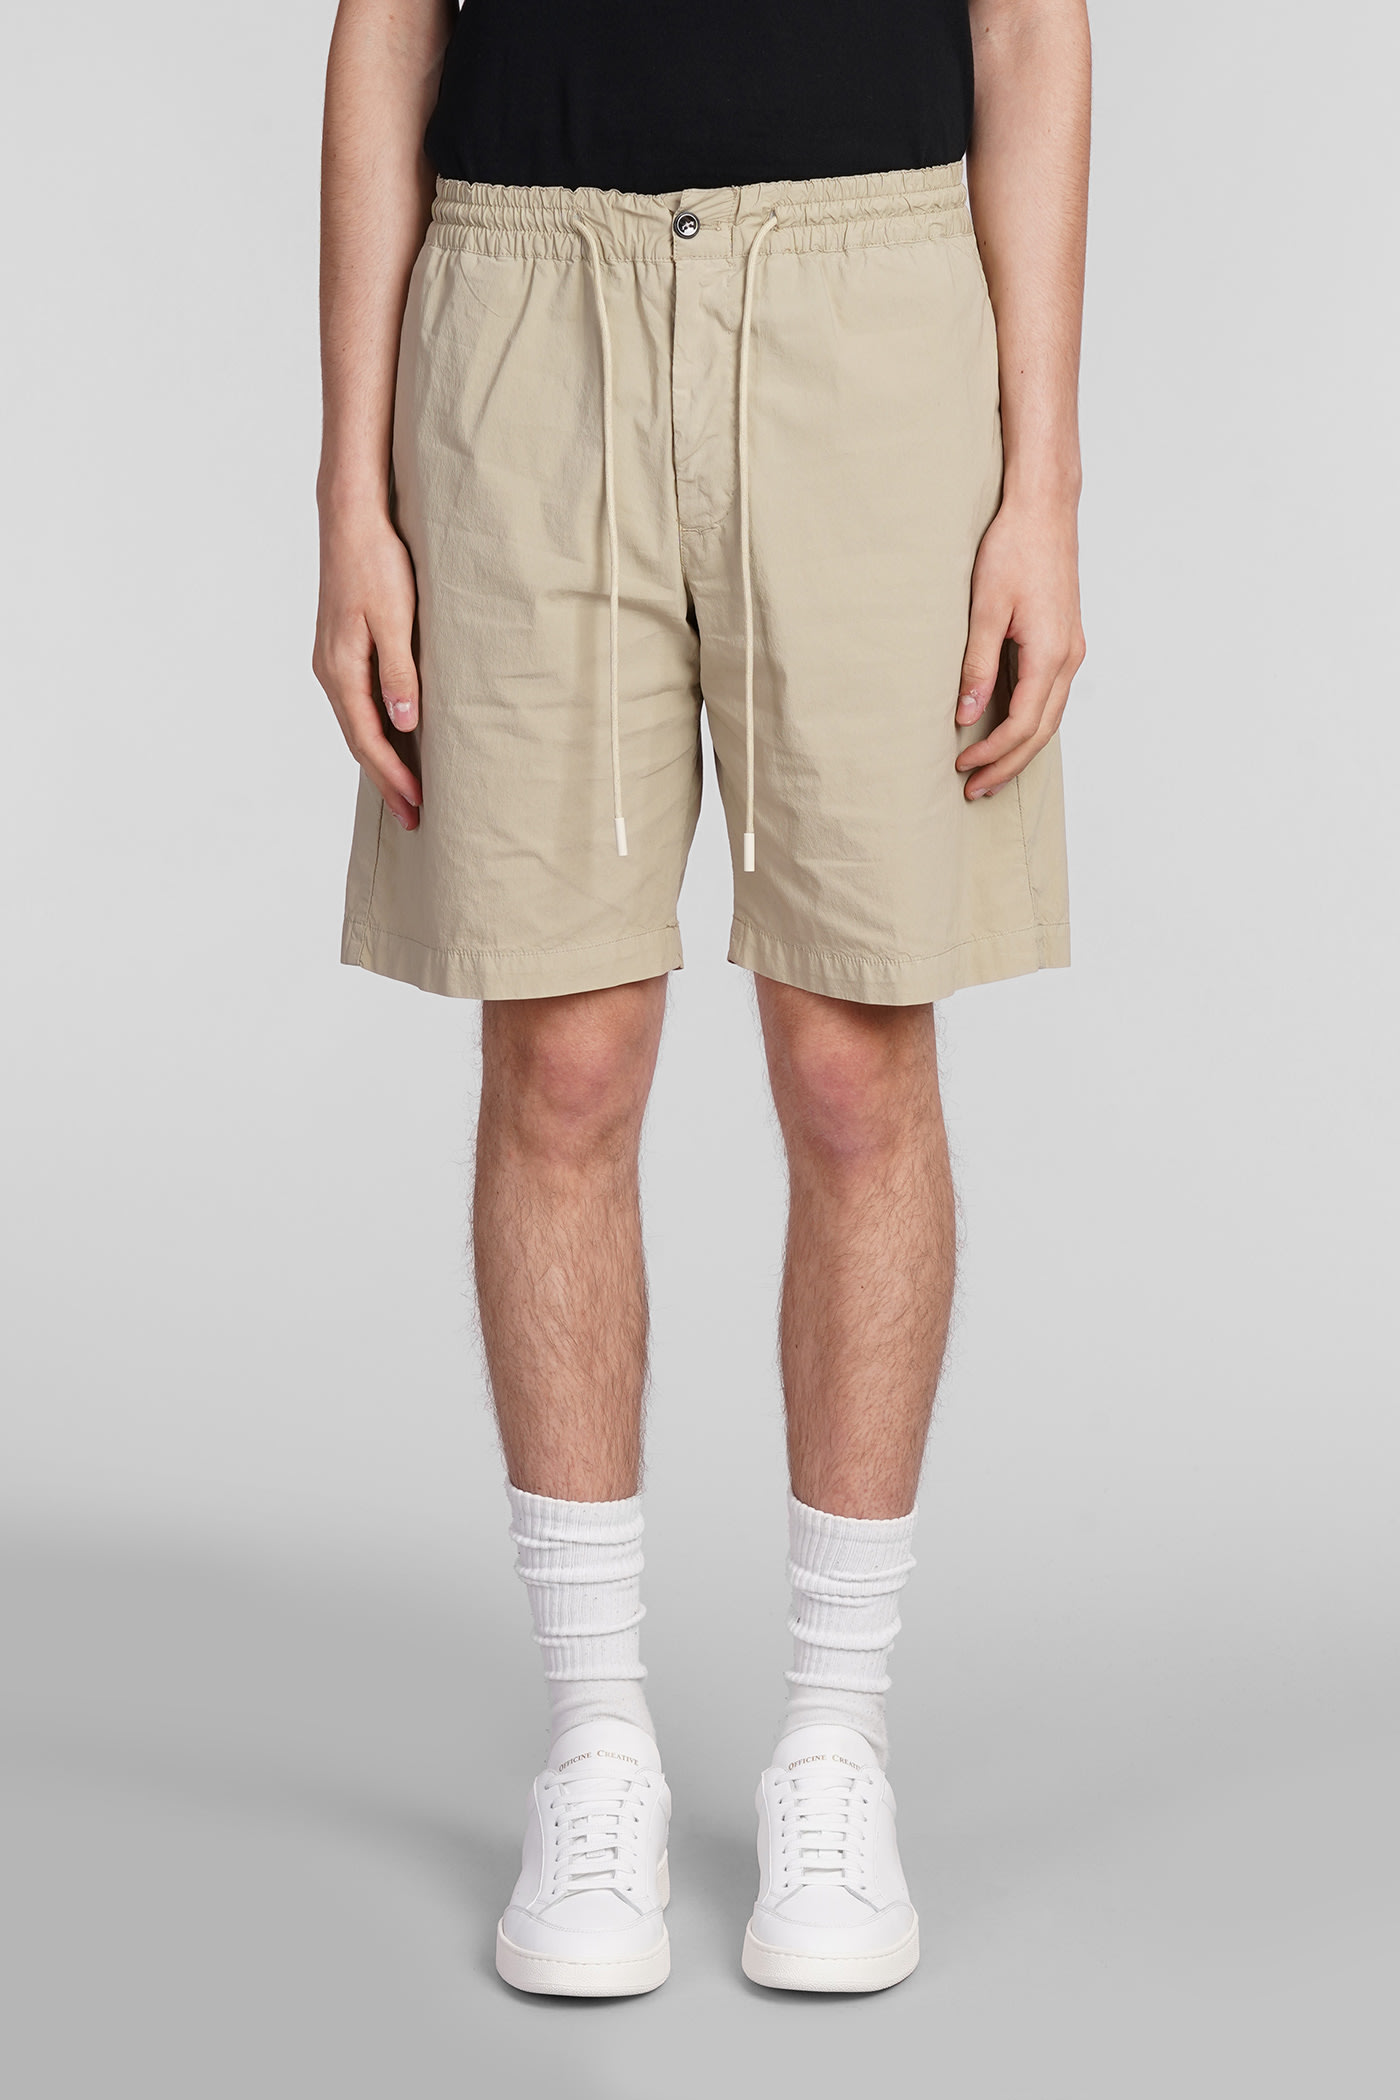 Shorts In Beige Cotton